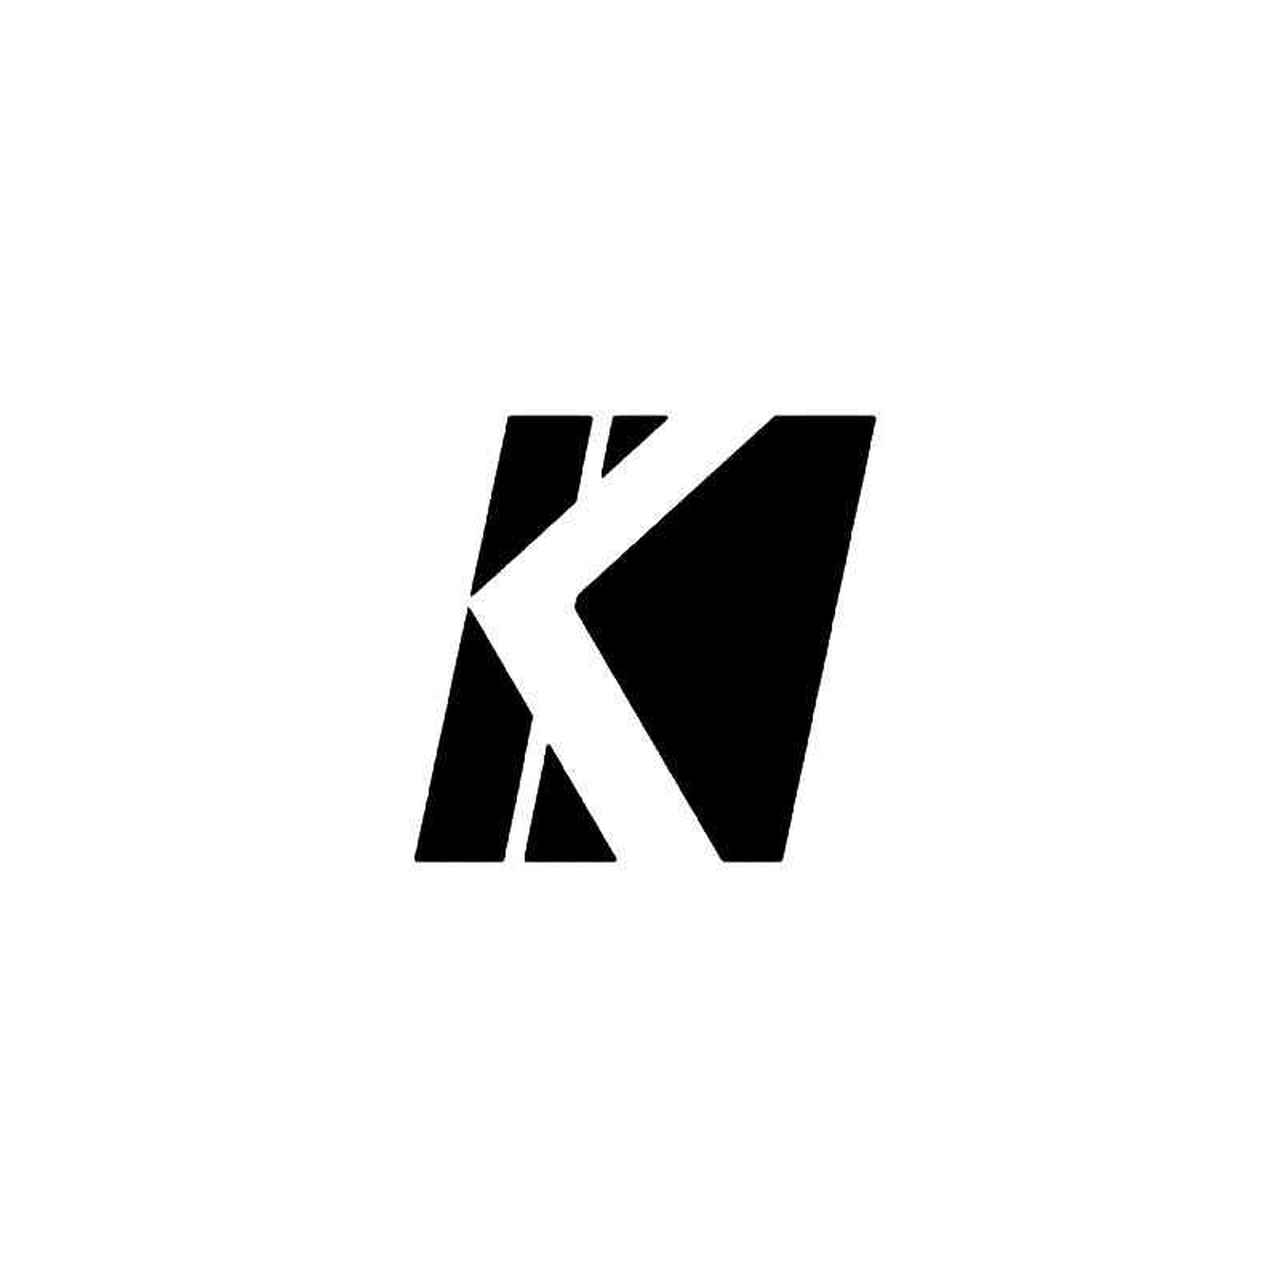 Kicker Logo - Kicker Logo 1 Vinyl Sticker